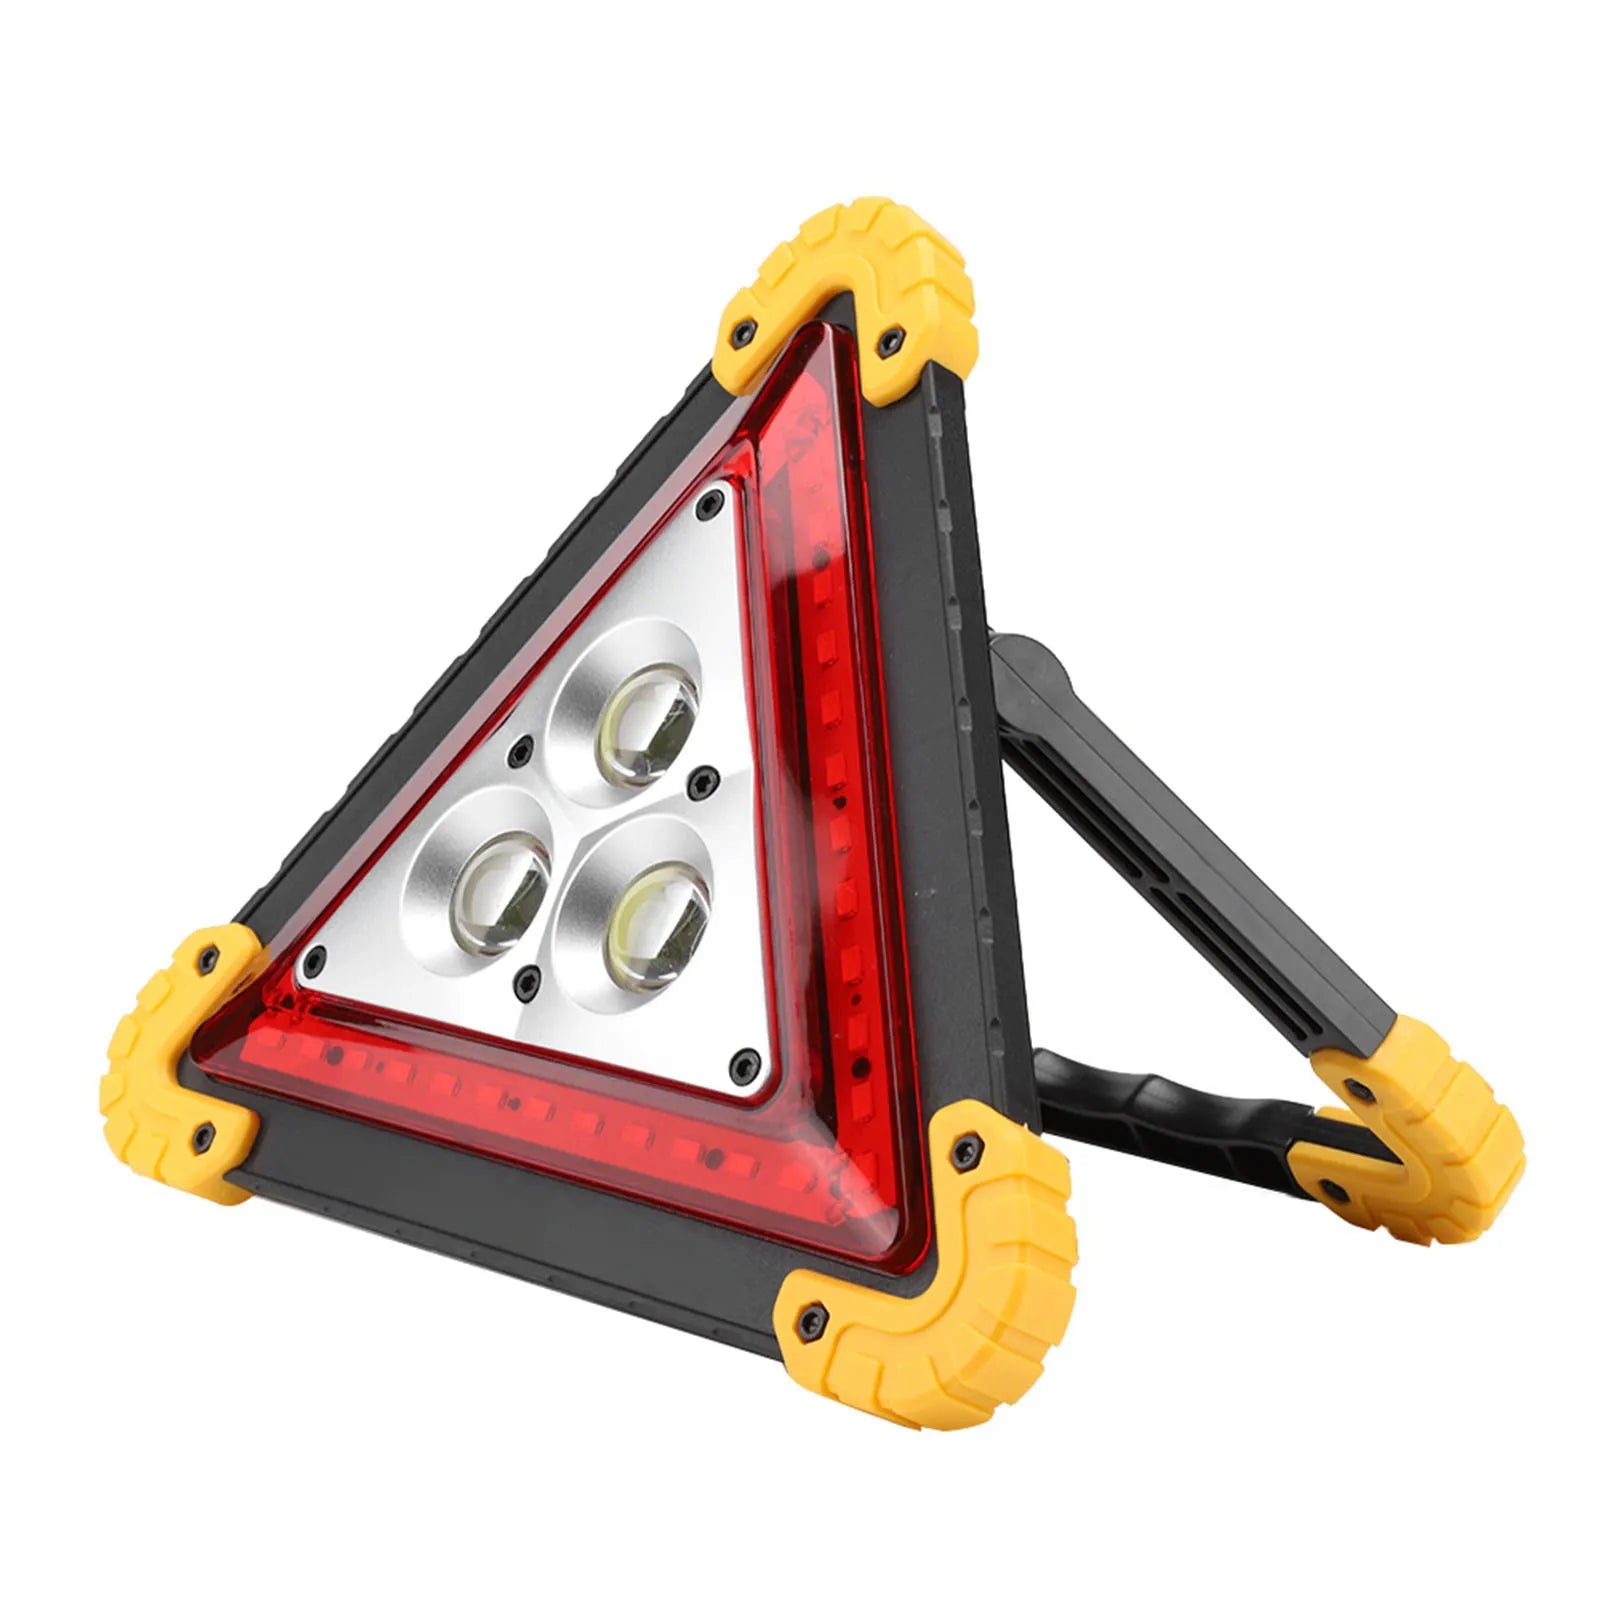 30W Auto-Warndreieck mit rotem und weißem LED-Licht | Hohe Sichtbarkeit mit zwei Lademodus3